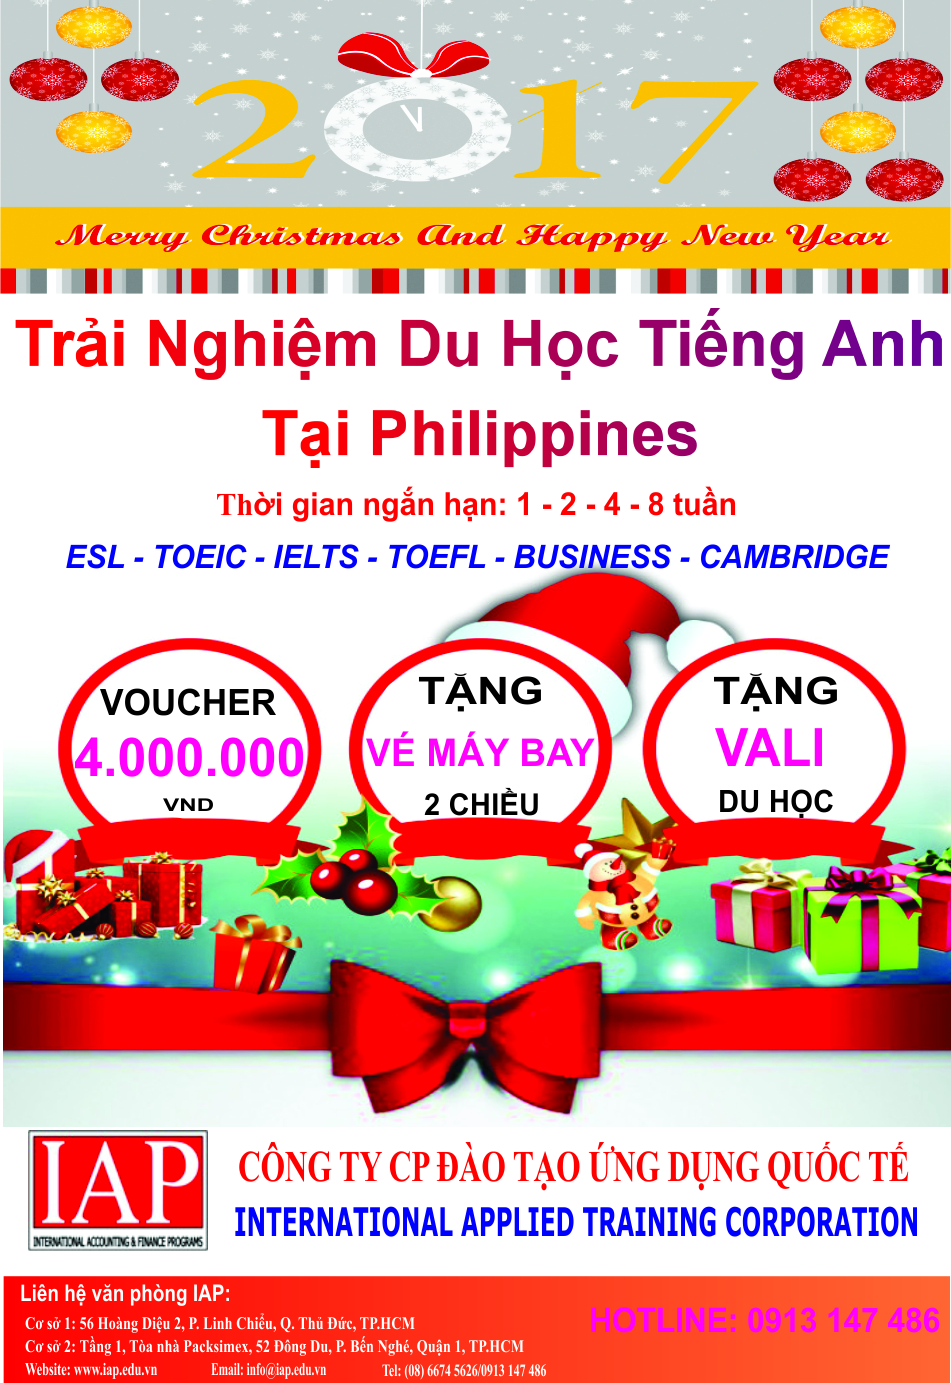 Tham gia chương trình du học tiếng Anh tại Philippines với nhiều phần quà Giáng Sinh hấp dẫn và giá trị